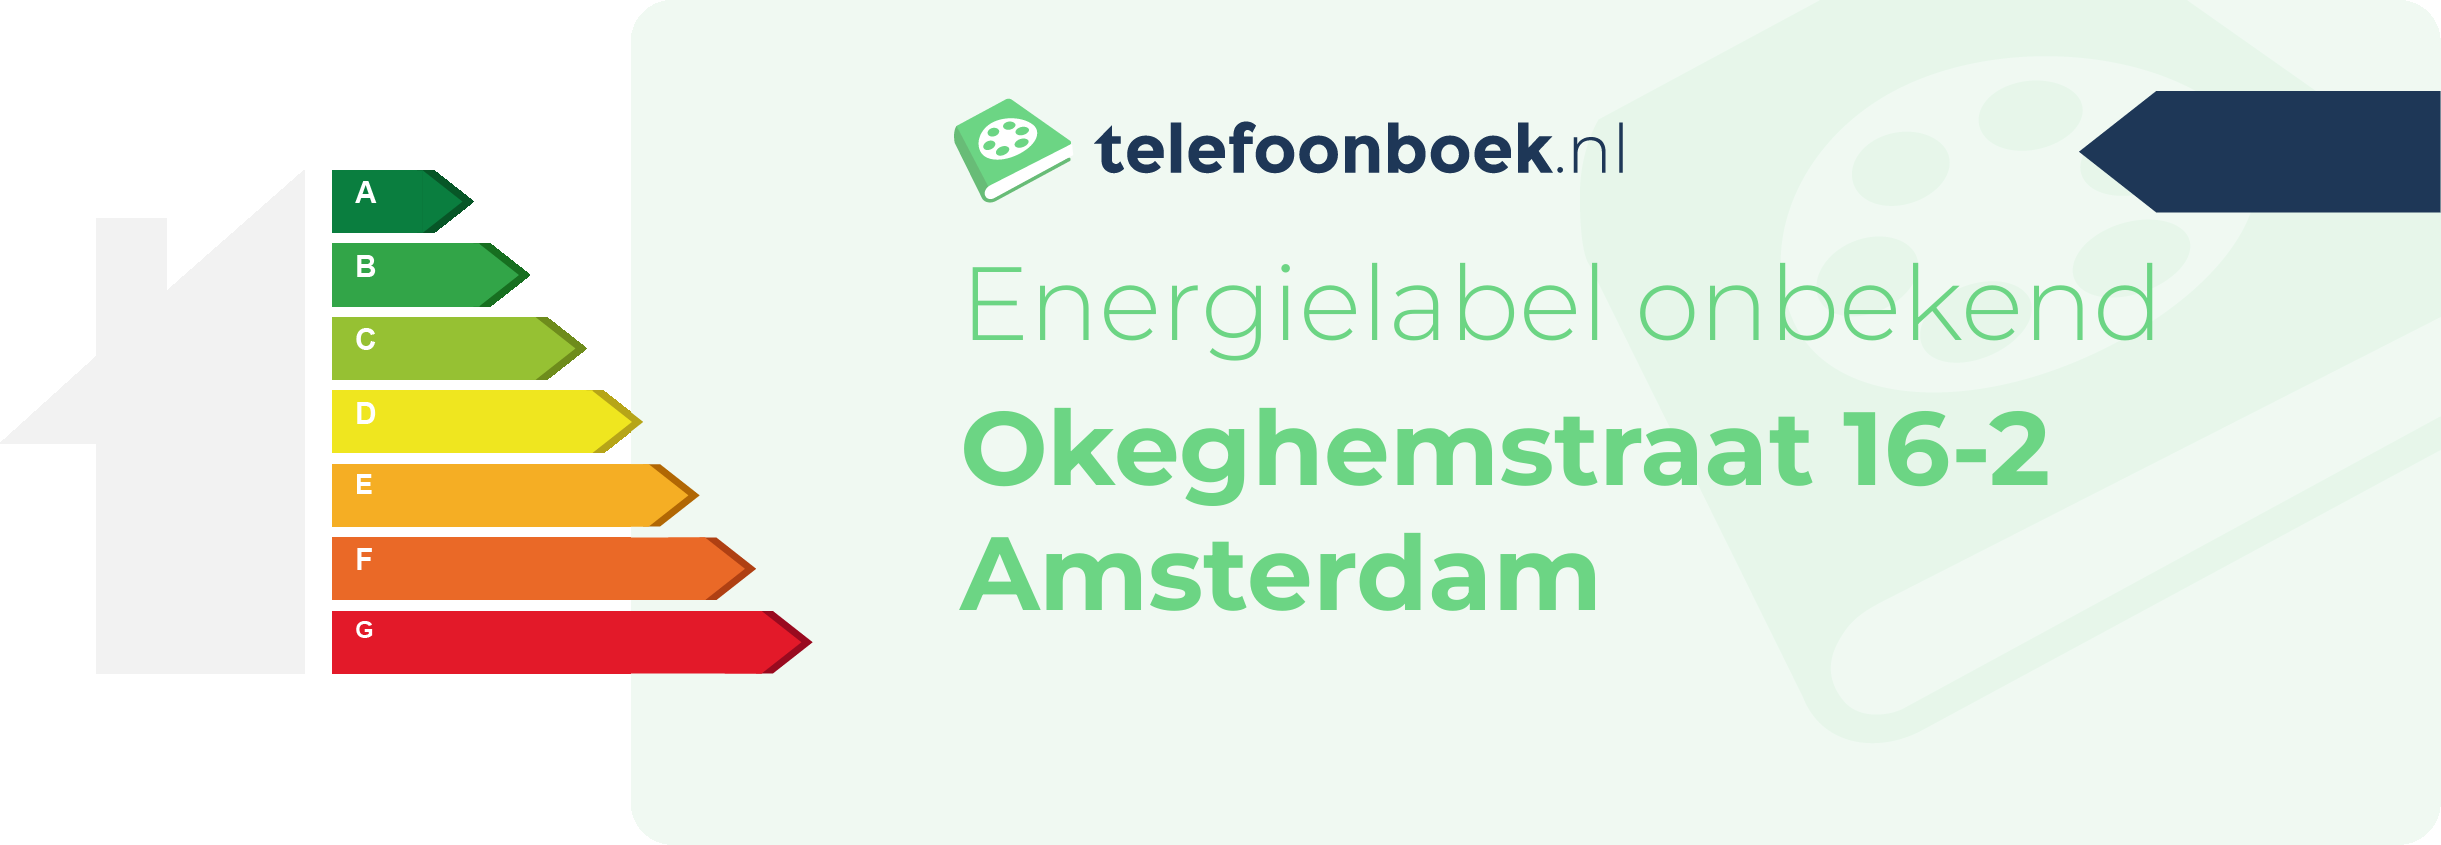 Energielabel Okeghemstraat 16-2 Amsterdam